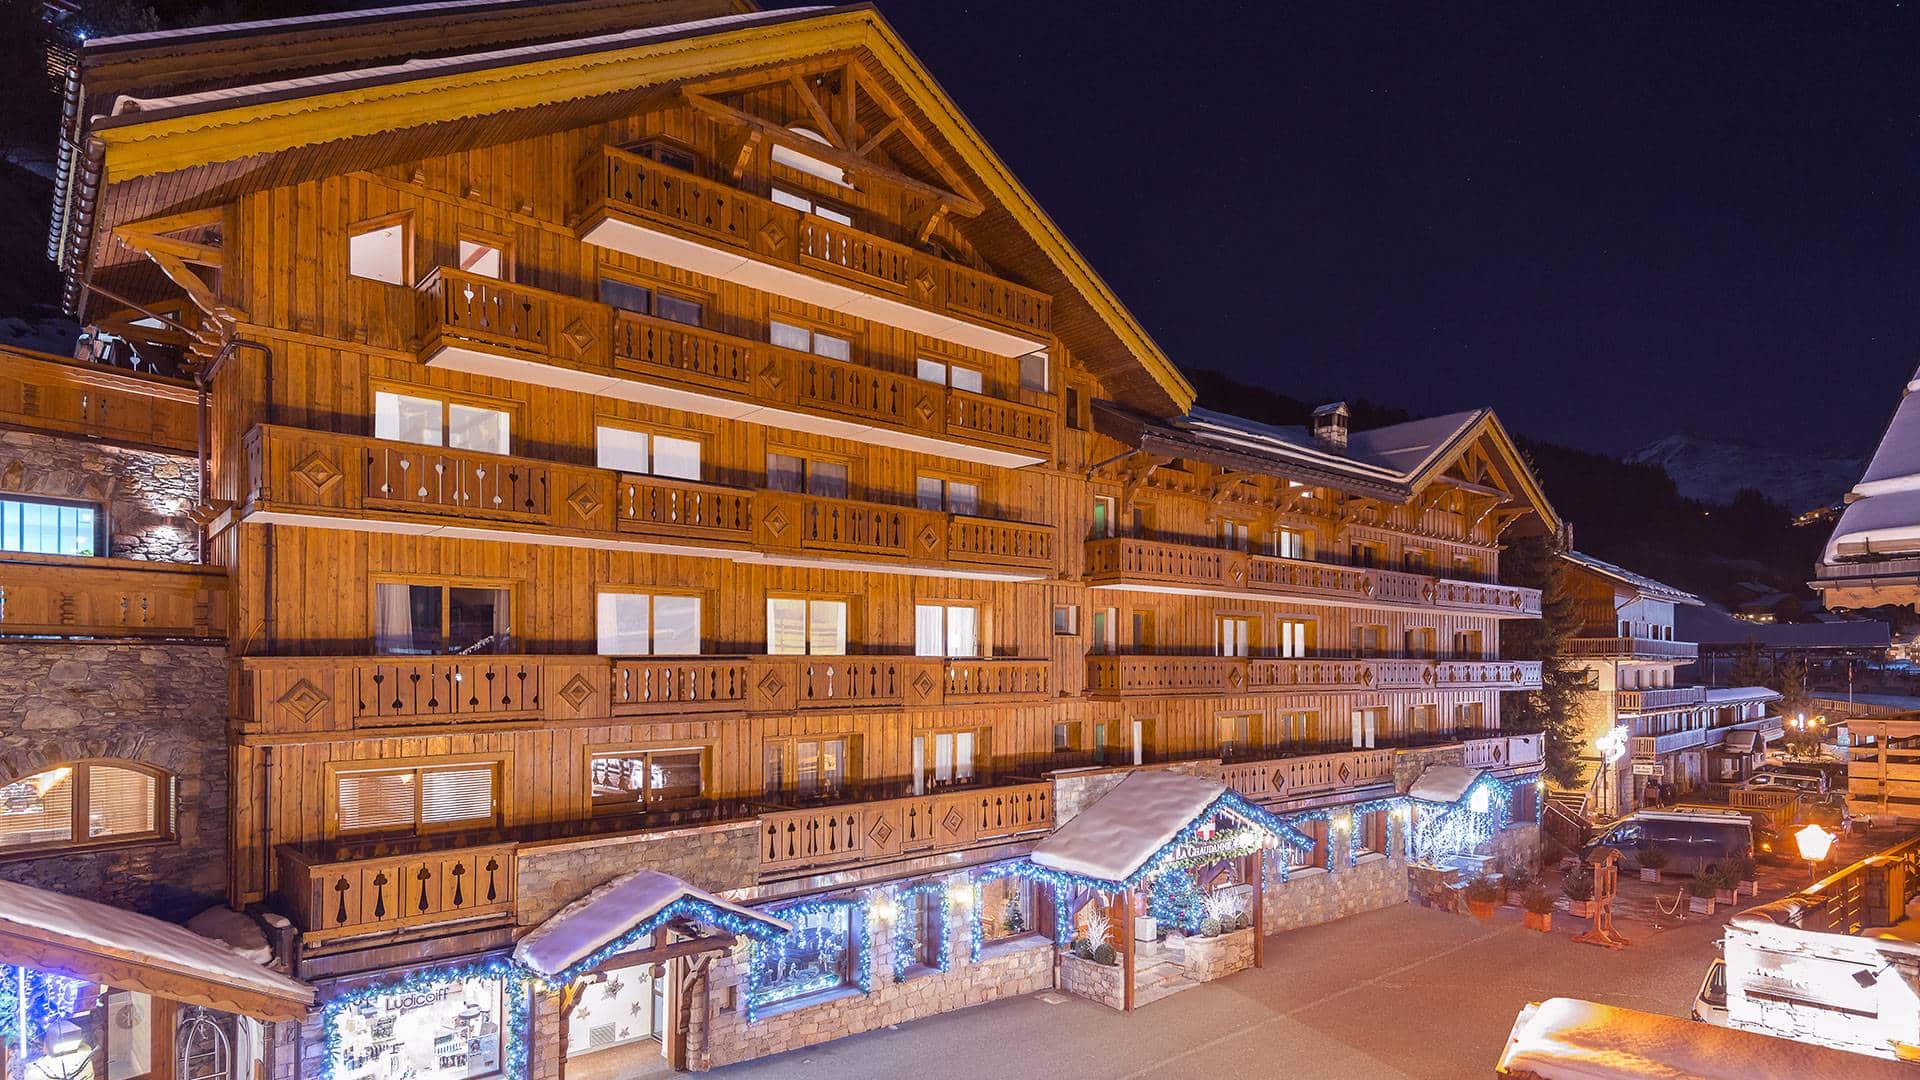 Découvrez pour vos évènements professionnel en Savoie au sein du plus grand domaine skiable du monde Hôtel La Chaudanne.